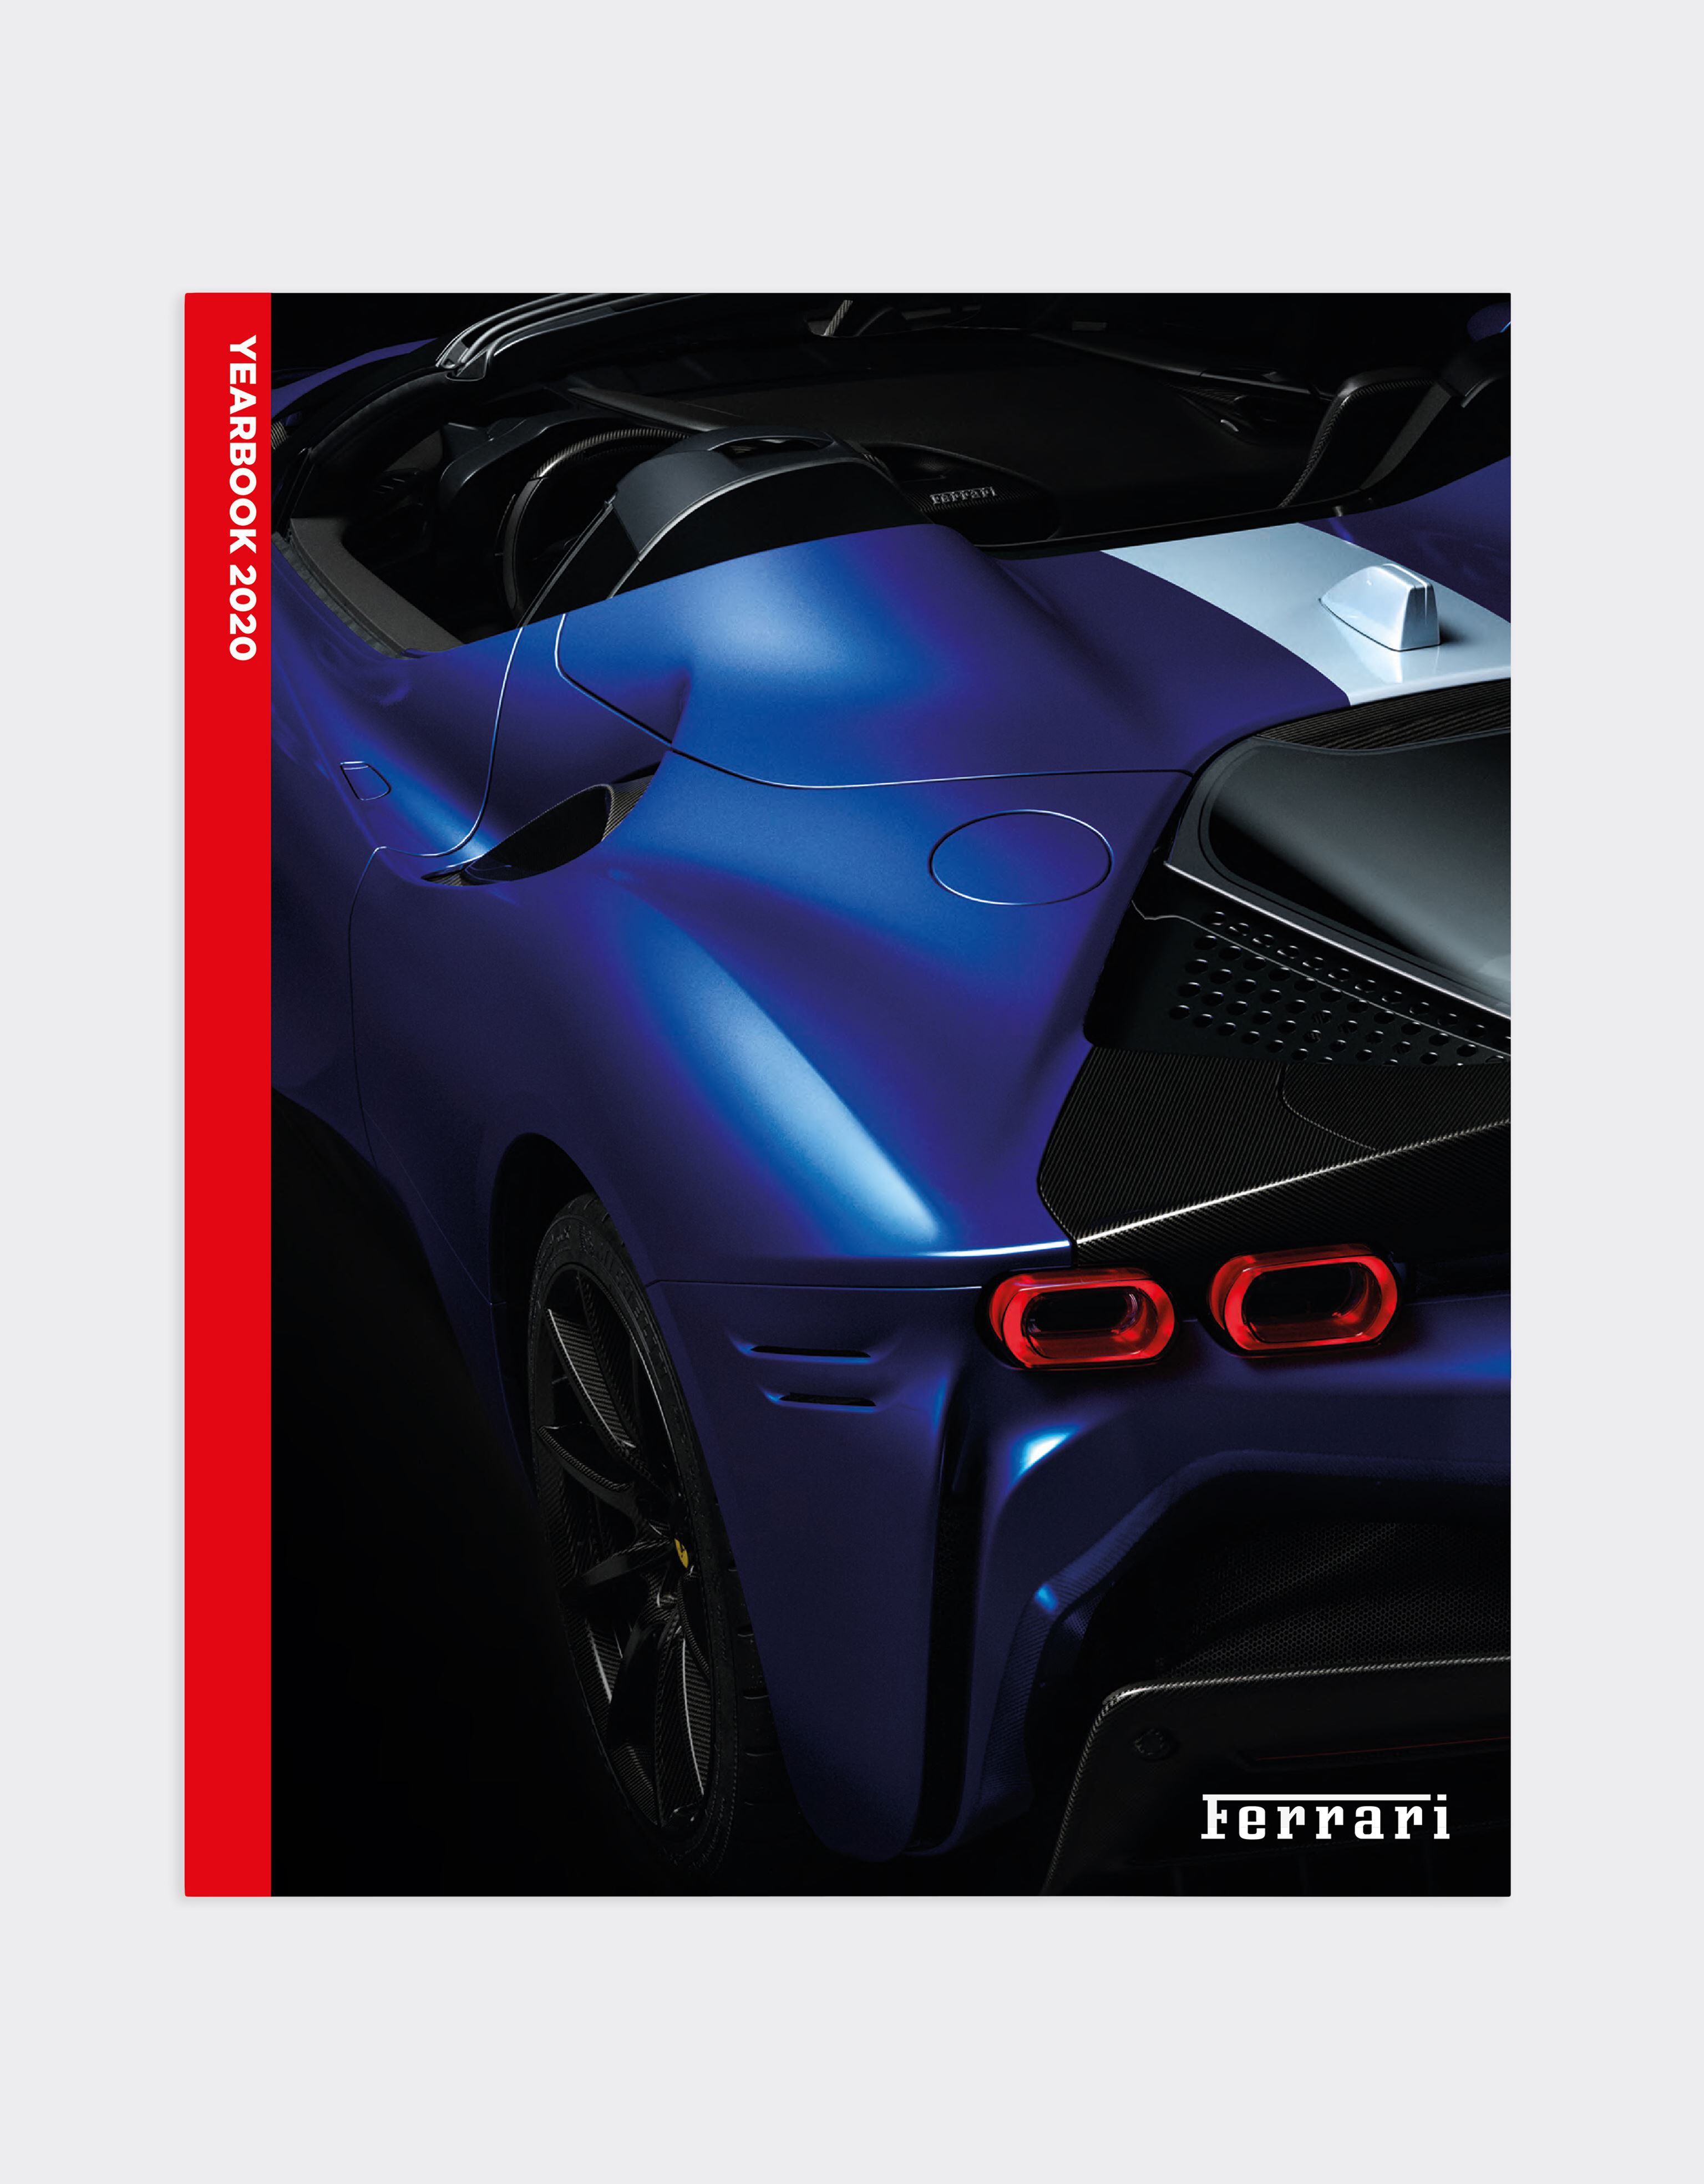 Ferrari The Official Ferrari Magazine Issue 49 - 2020 Yearbook MULTICOLOUR 15389f